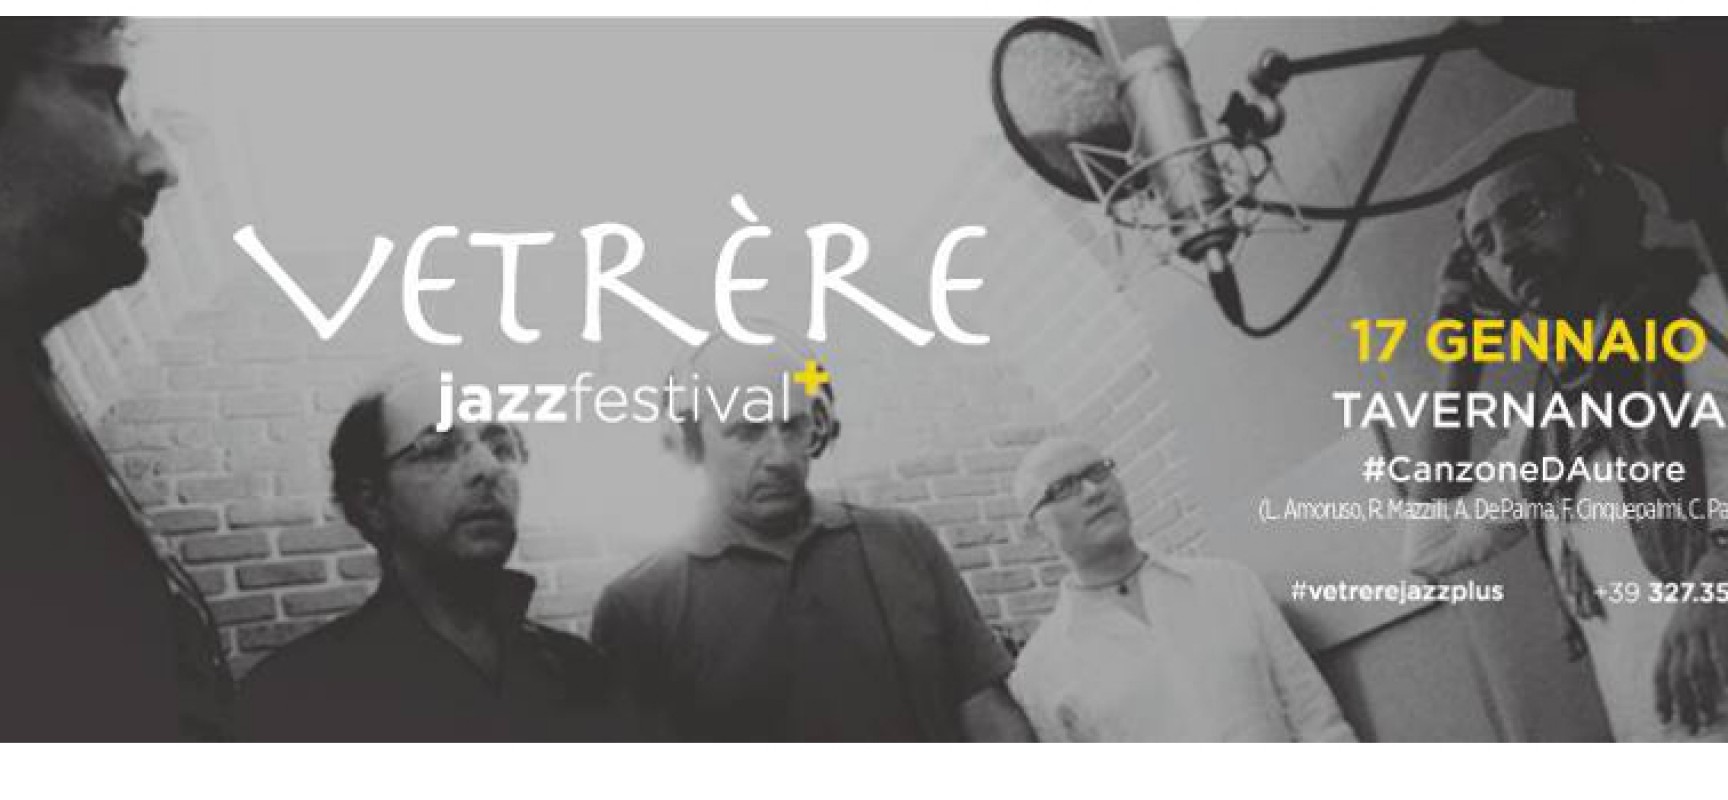 Vetrère Jazz Festival plus, arriva la canzone d’autore: Tavernanova in concerto